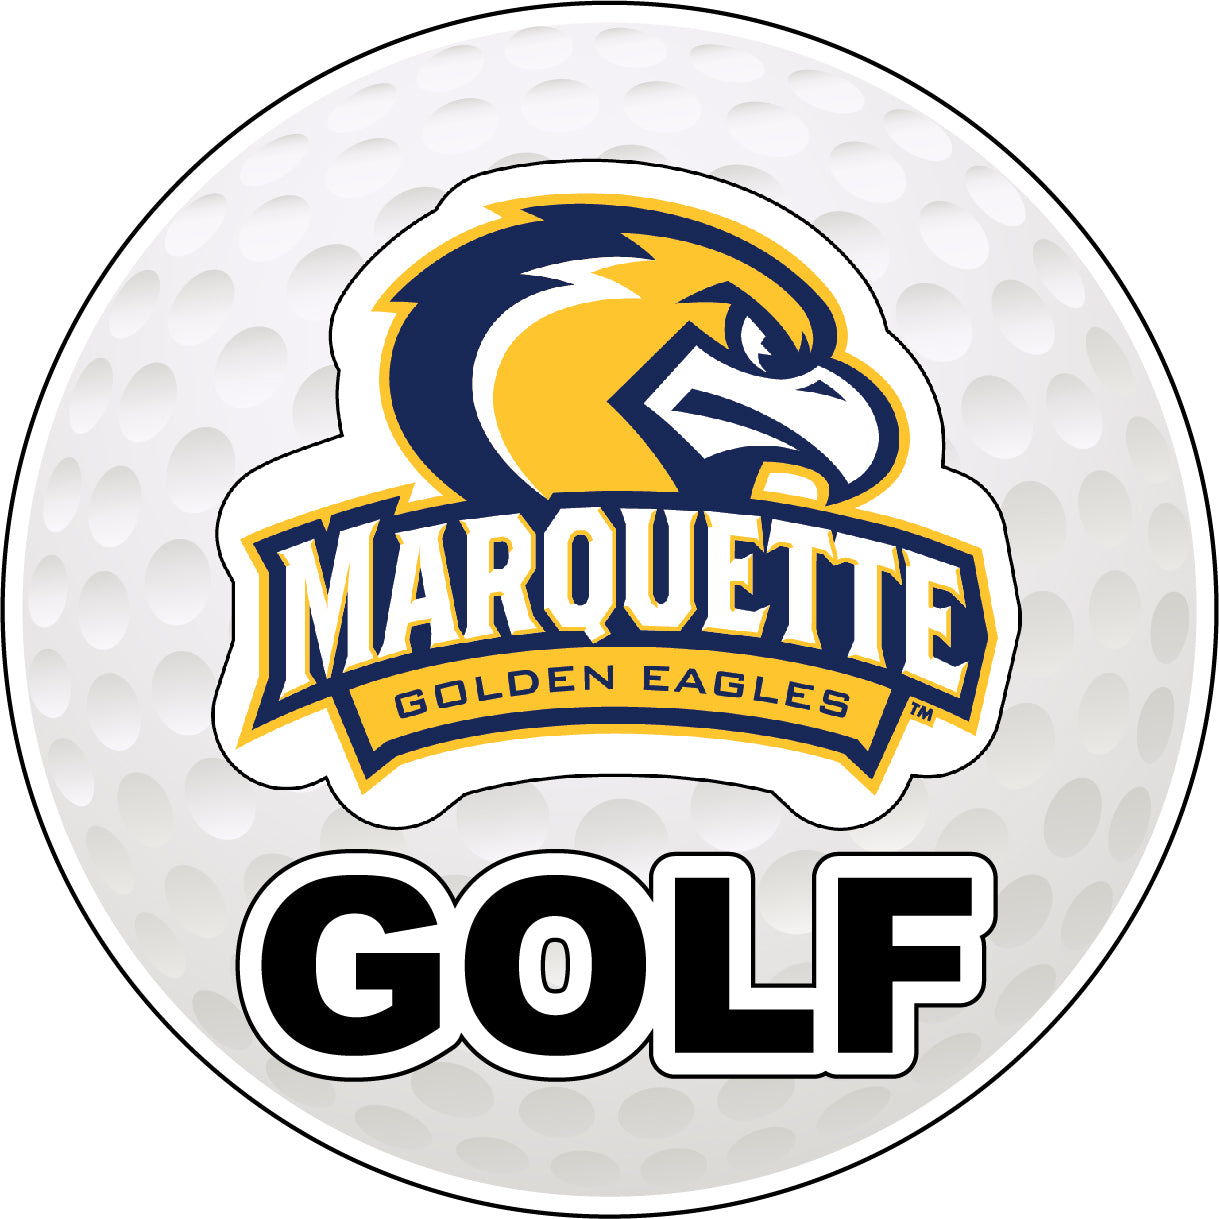 Marquette Golden Eagles 4-Inch Round Golf Ball Vinyl Decal Sticker